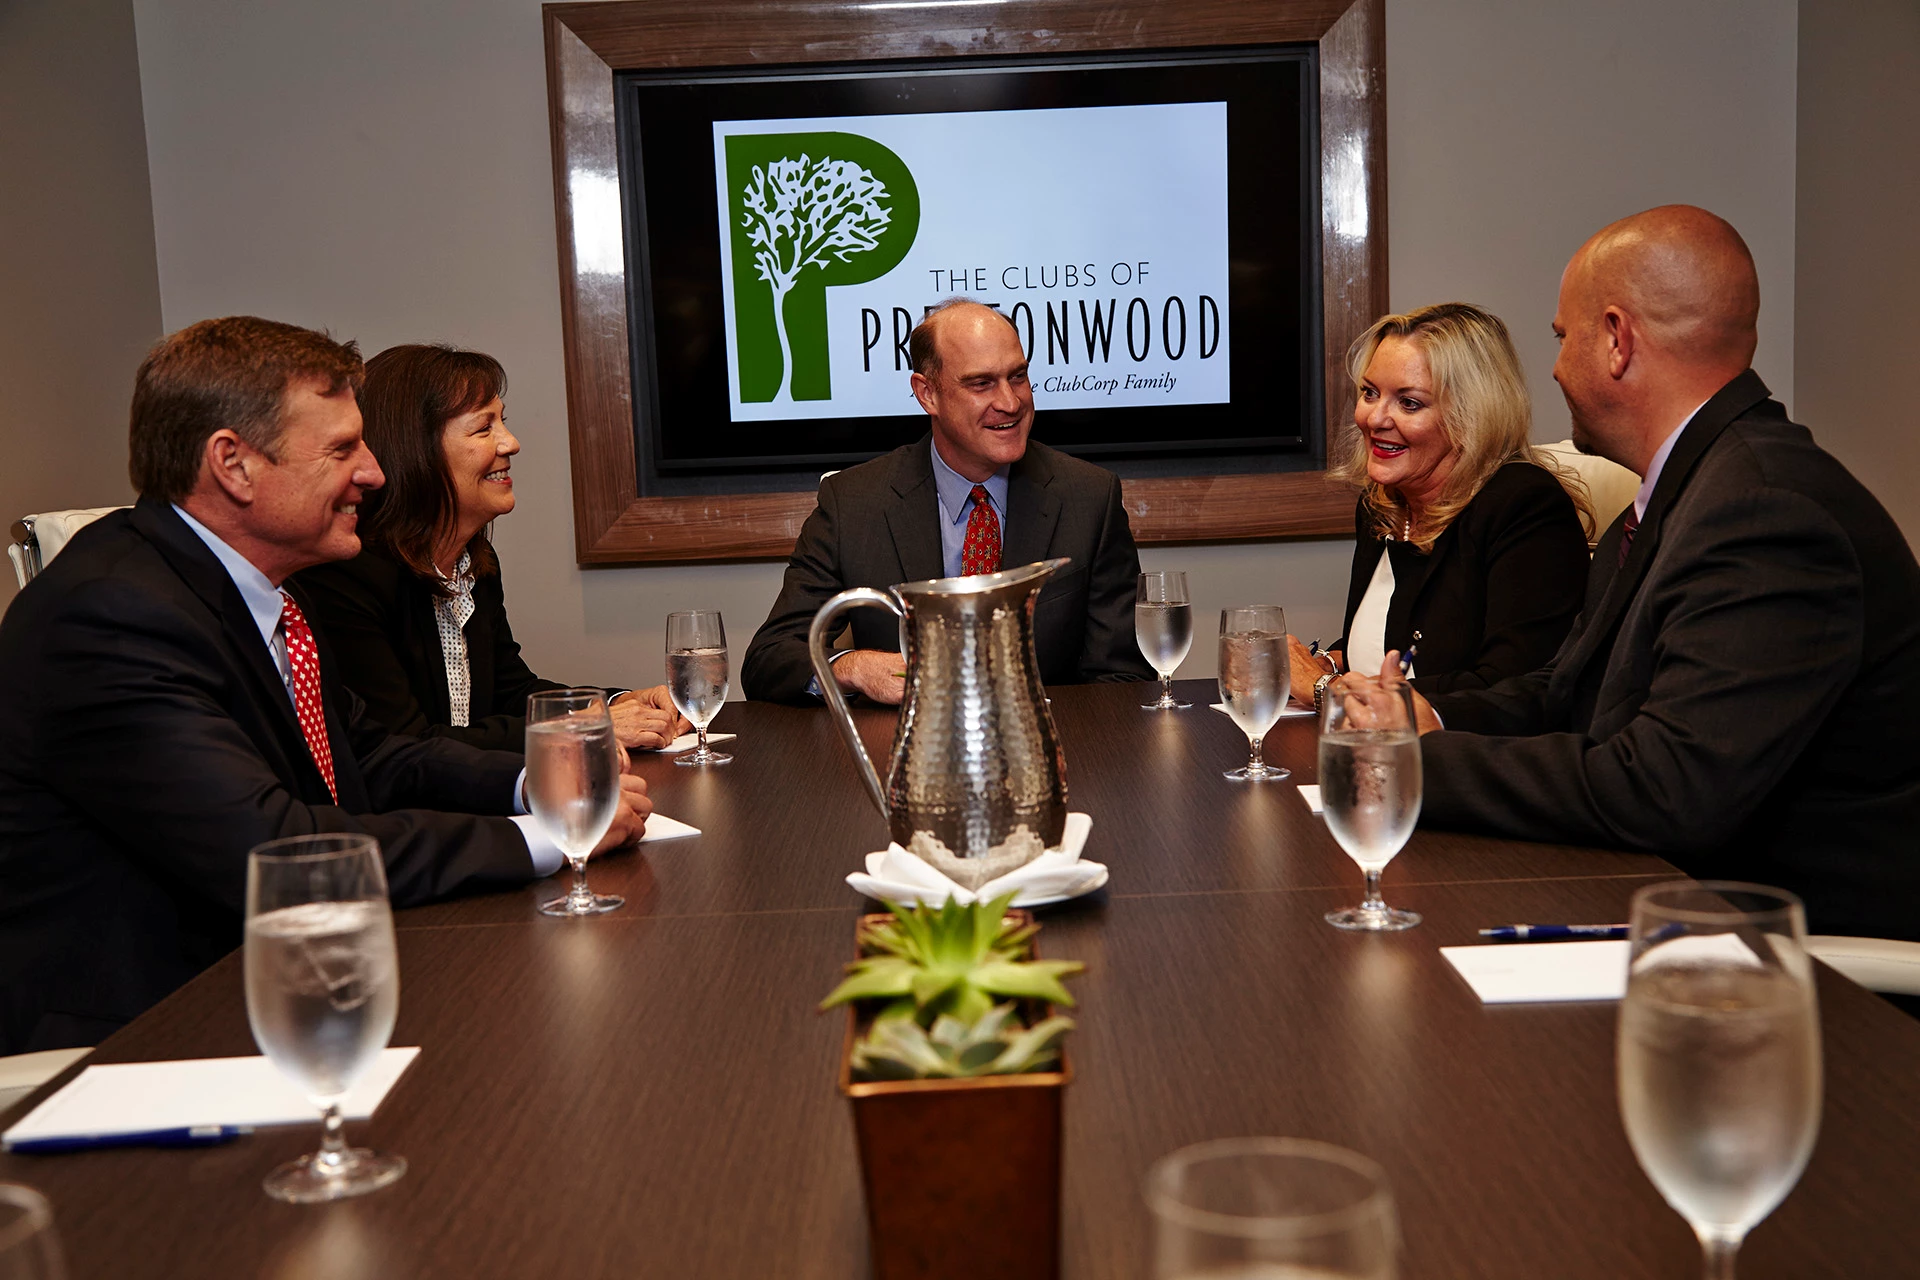 The Clubs of Prestonwood - Members in Meeting Room